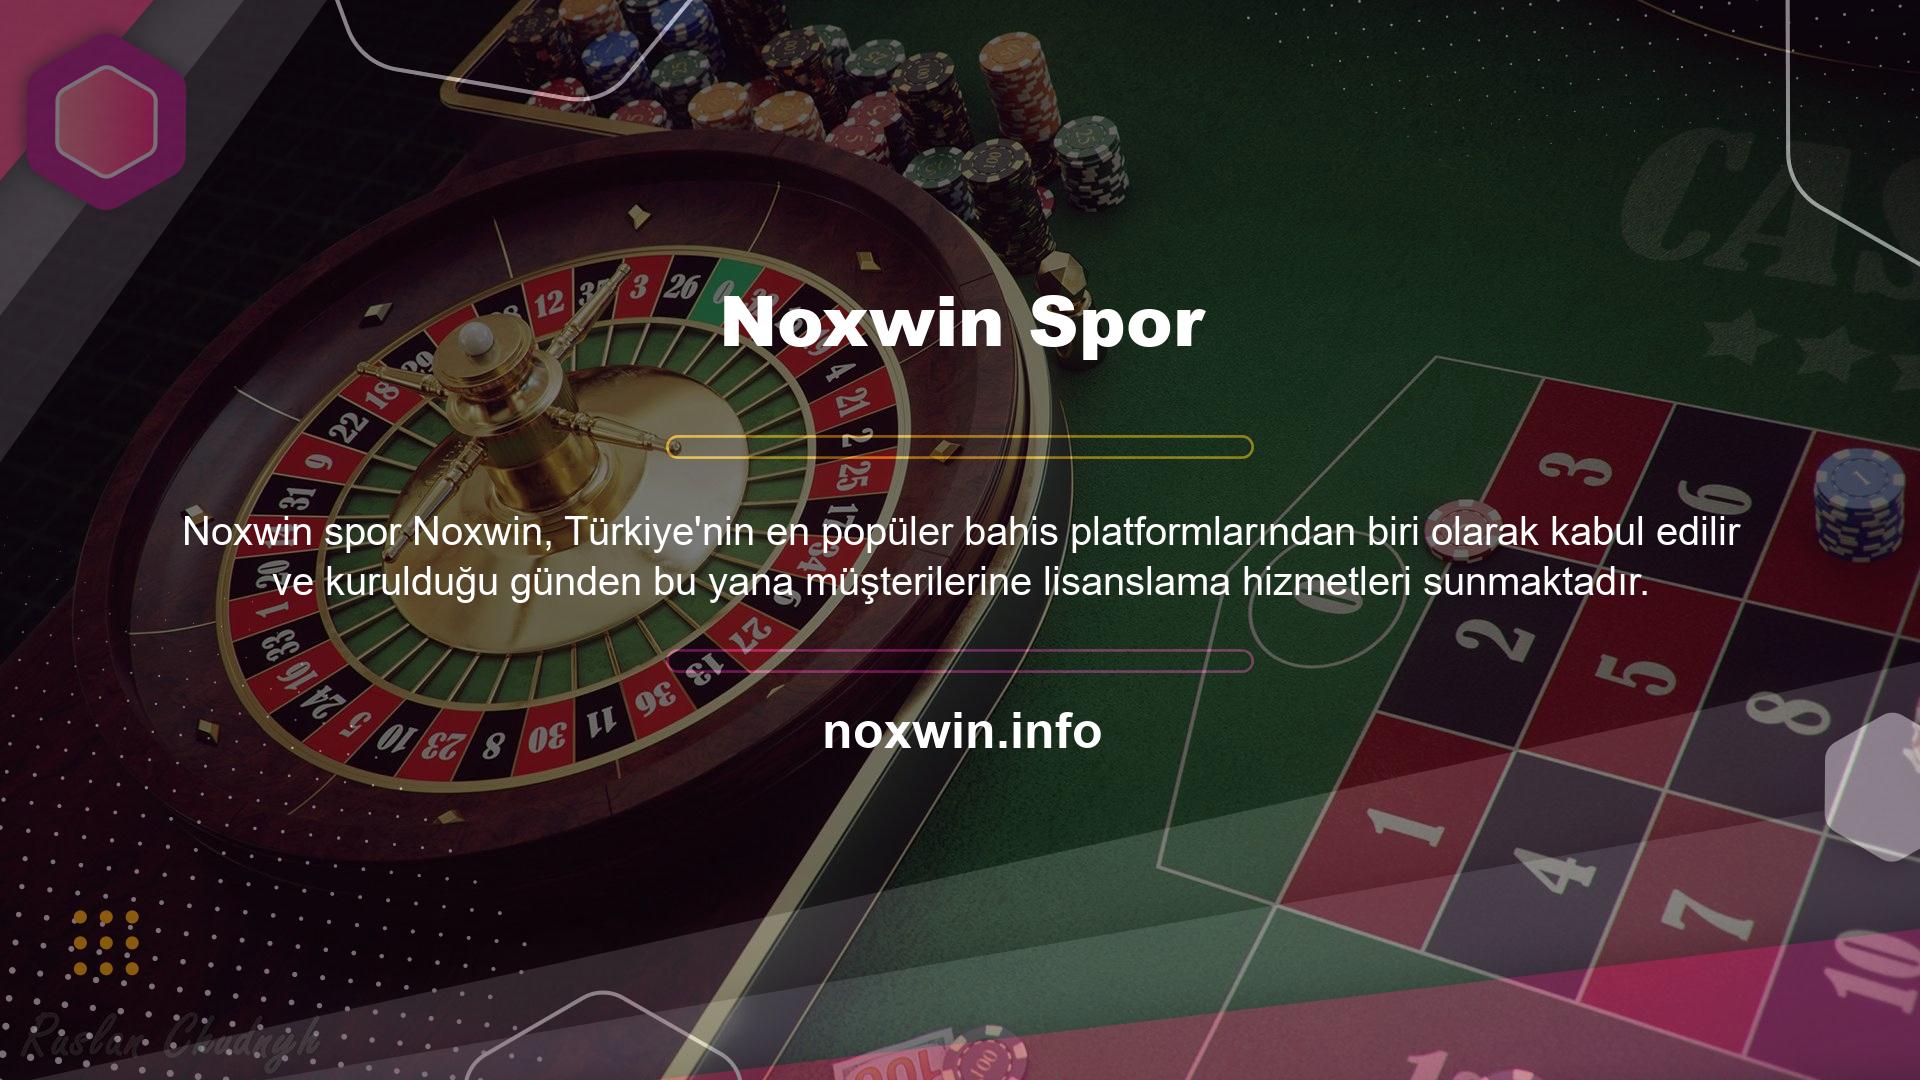 Noxwin Sanal Bahis Bölümü, eğlence şeklinde sanal basketbol, ​​tenis ve Avrupa Kupası bahisleri sunmak için kurulmuştur